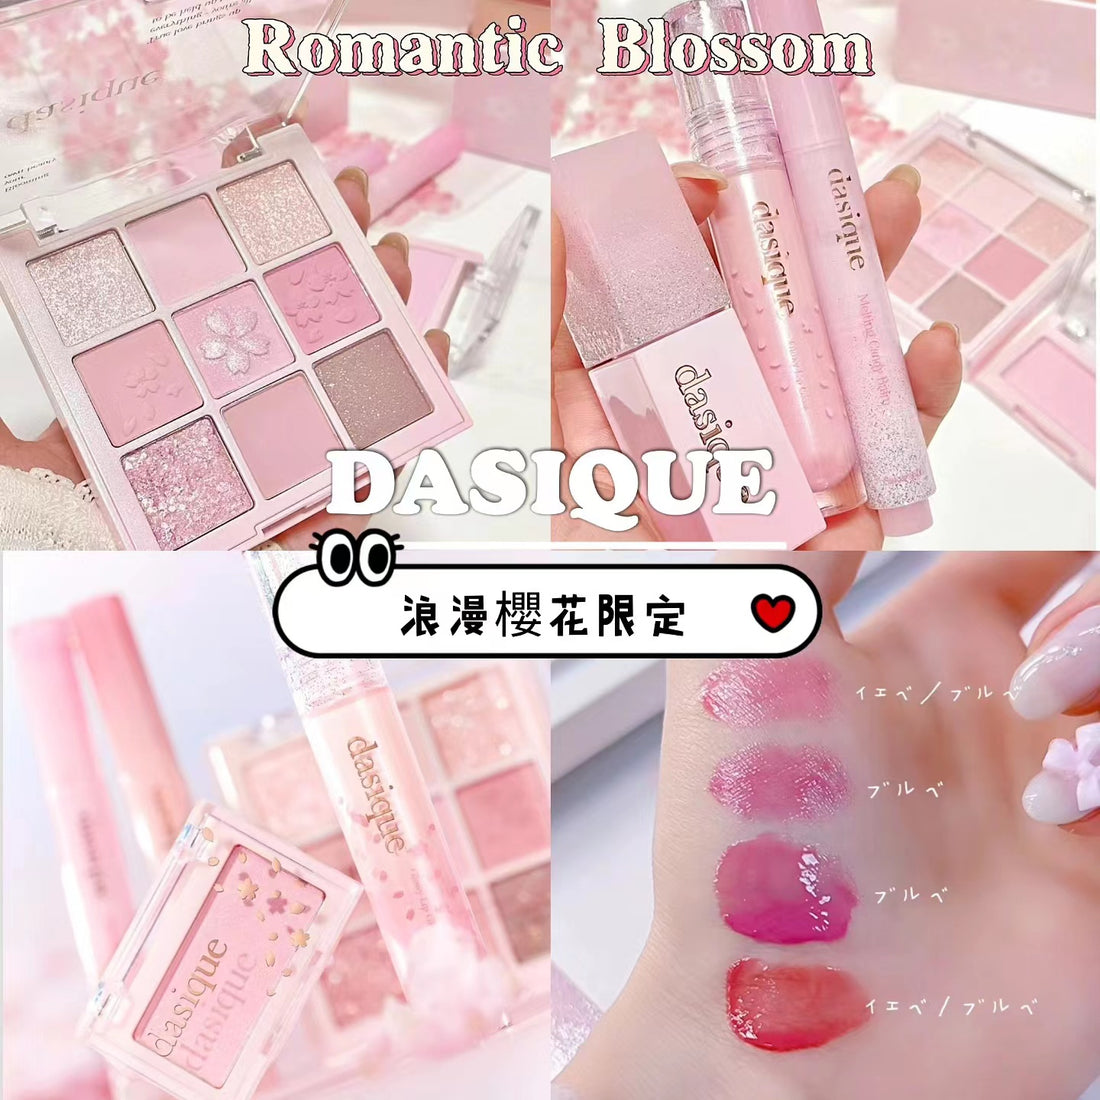 現貨+ 預訂品 l Dasique 浪漫櫻花系列 Romantic Blossom Collection🌸